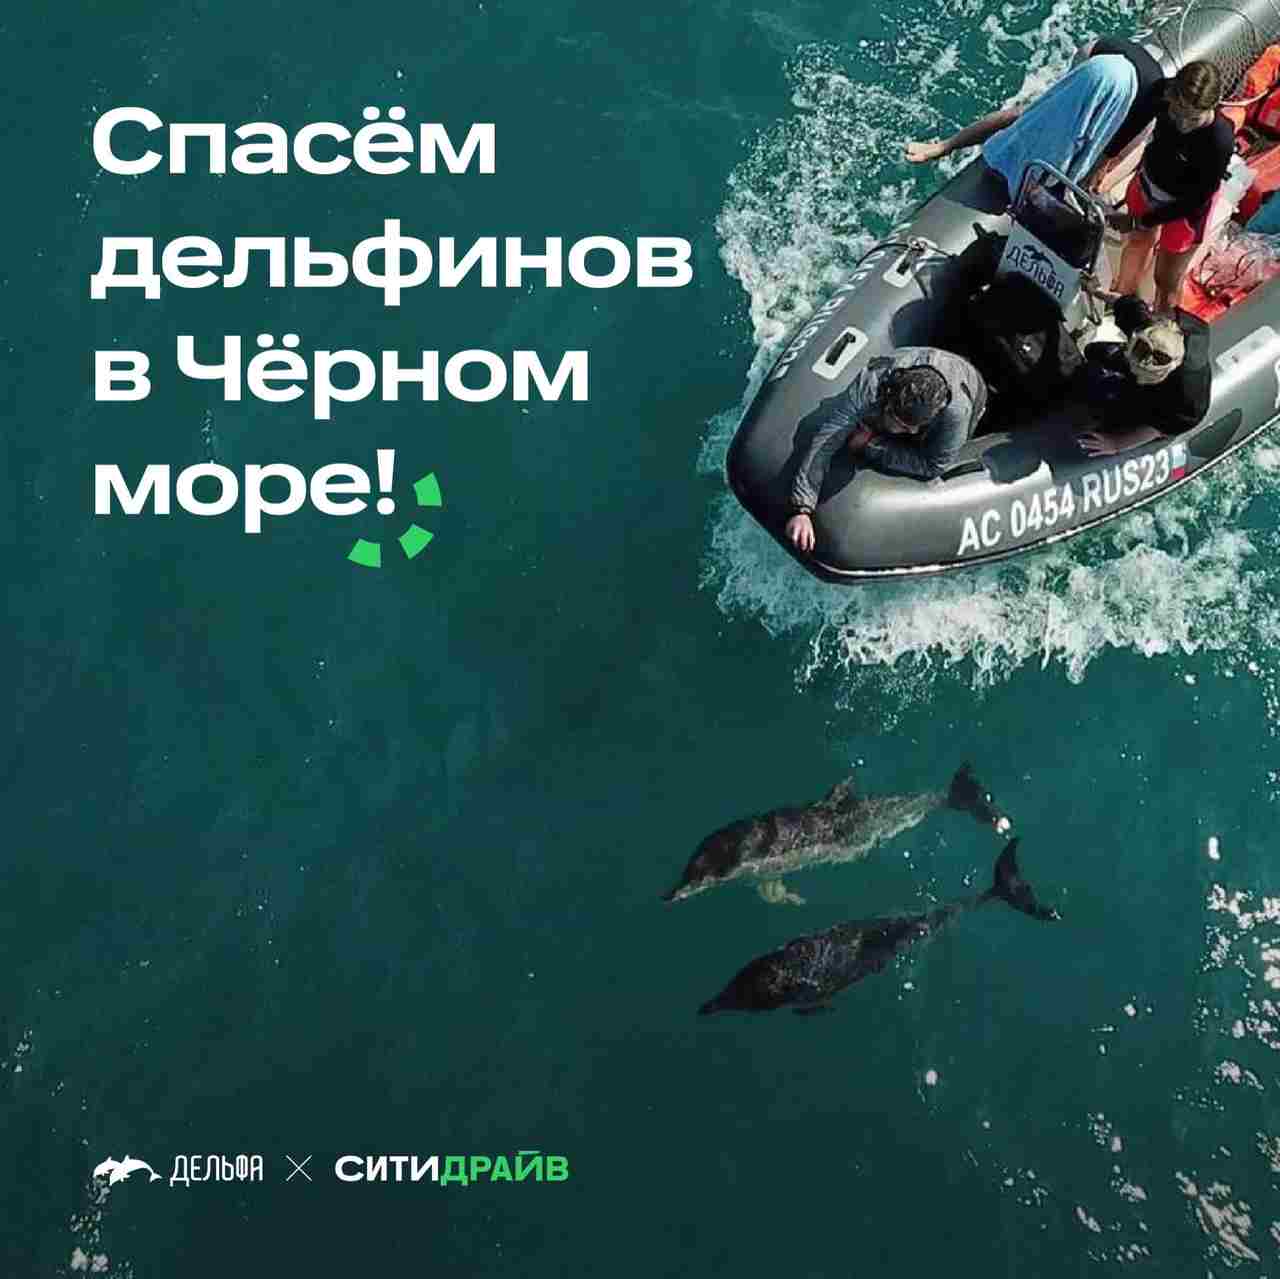 Каршеринг Ситидрайв поможет фонду «Дельфа» спасать краснокнижных черноморских дельфинов 10 ₽ с каждой поездки…